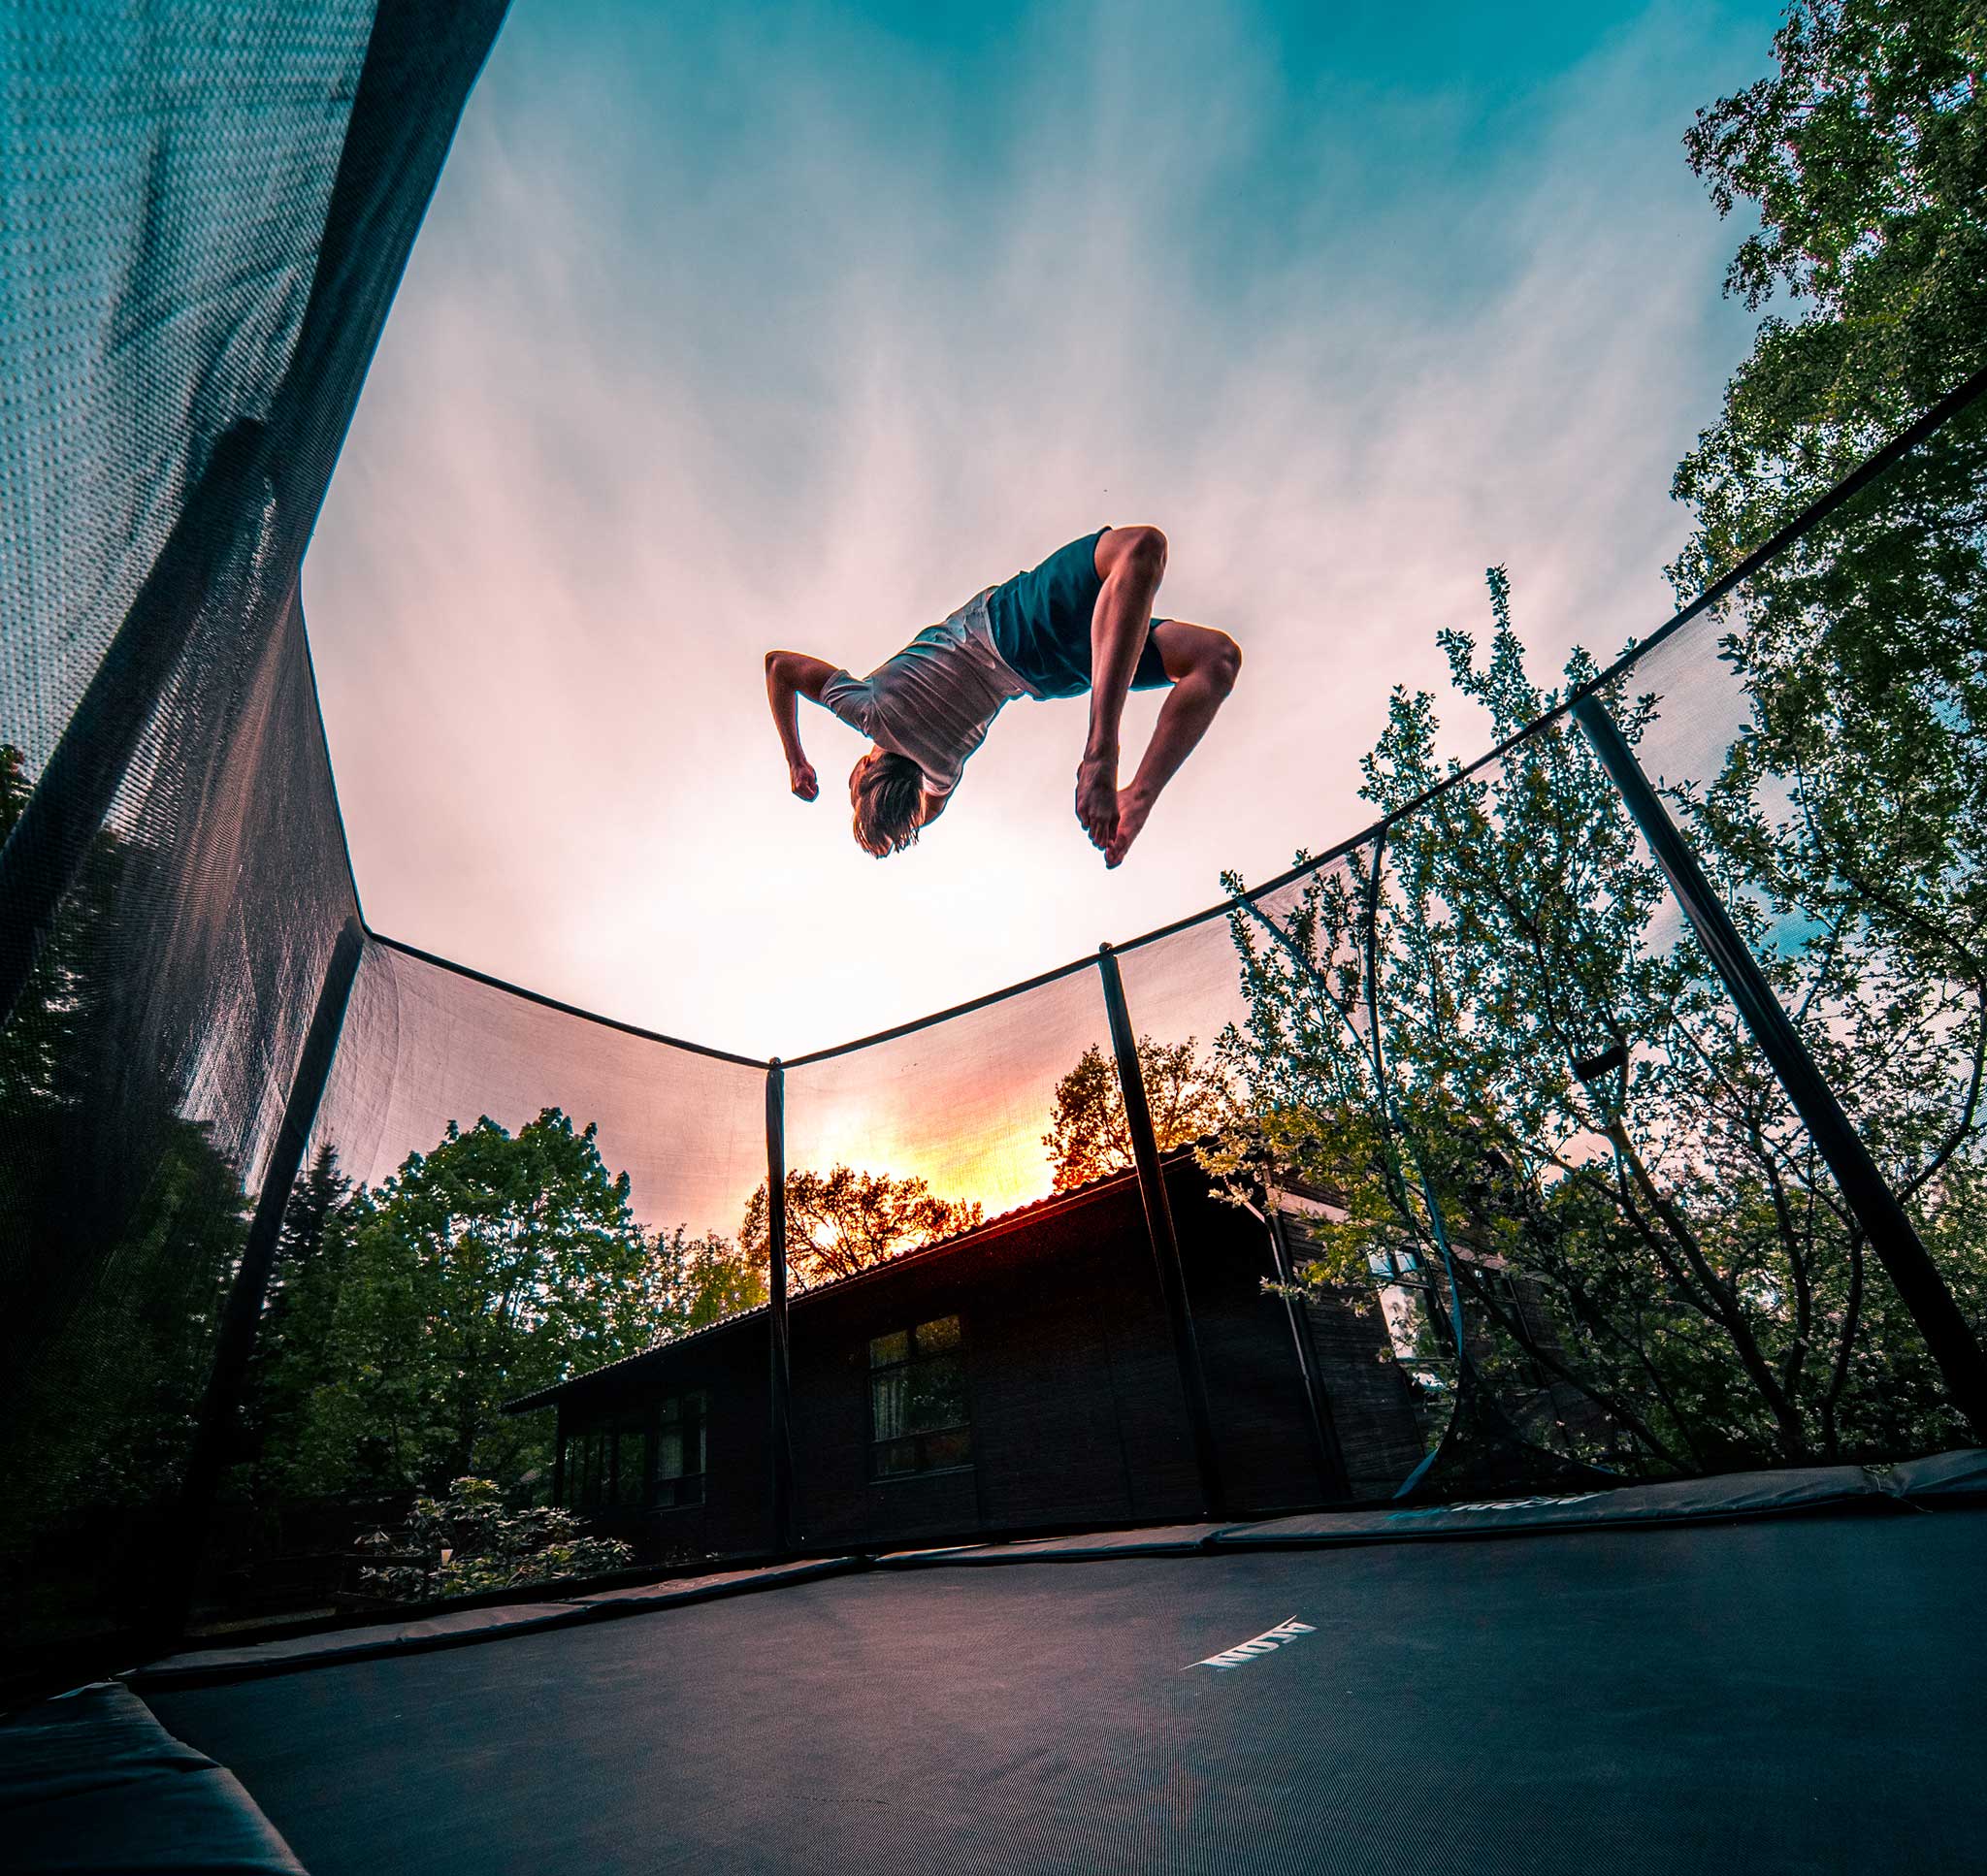 A boy doing a backflip on an Acon 16 HD trampoline